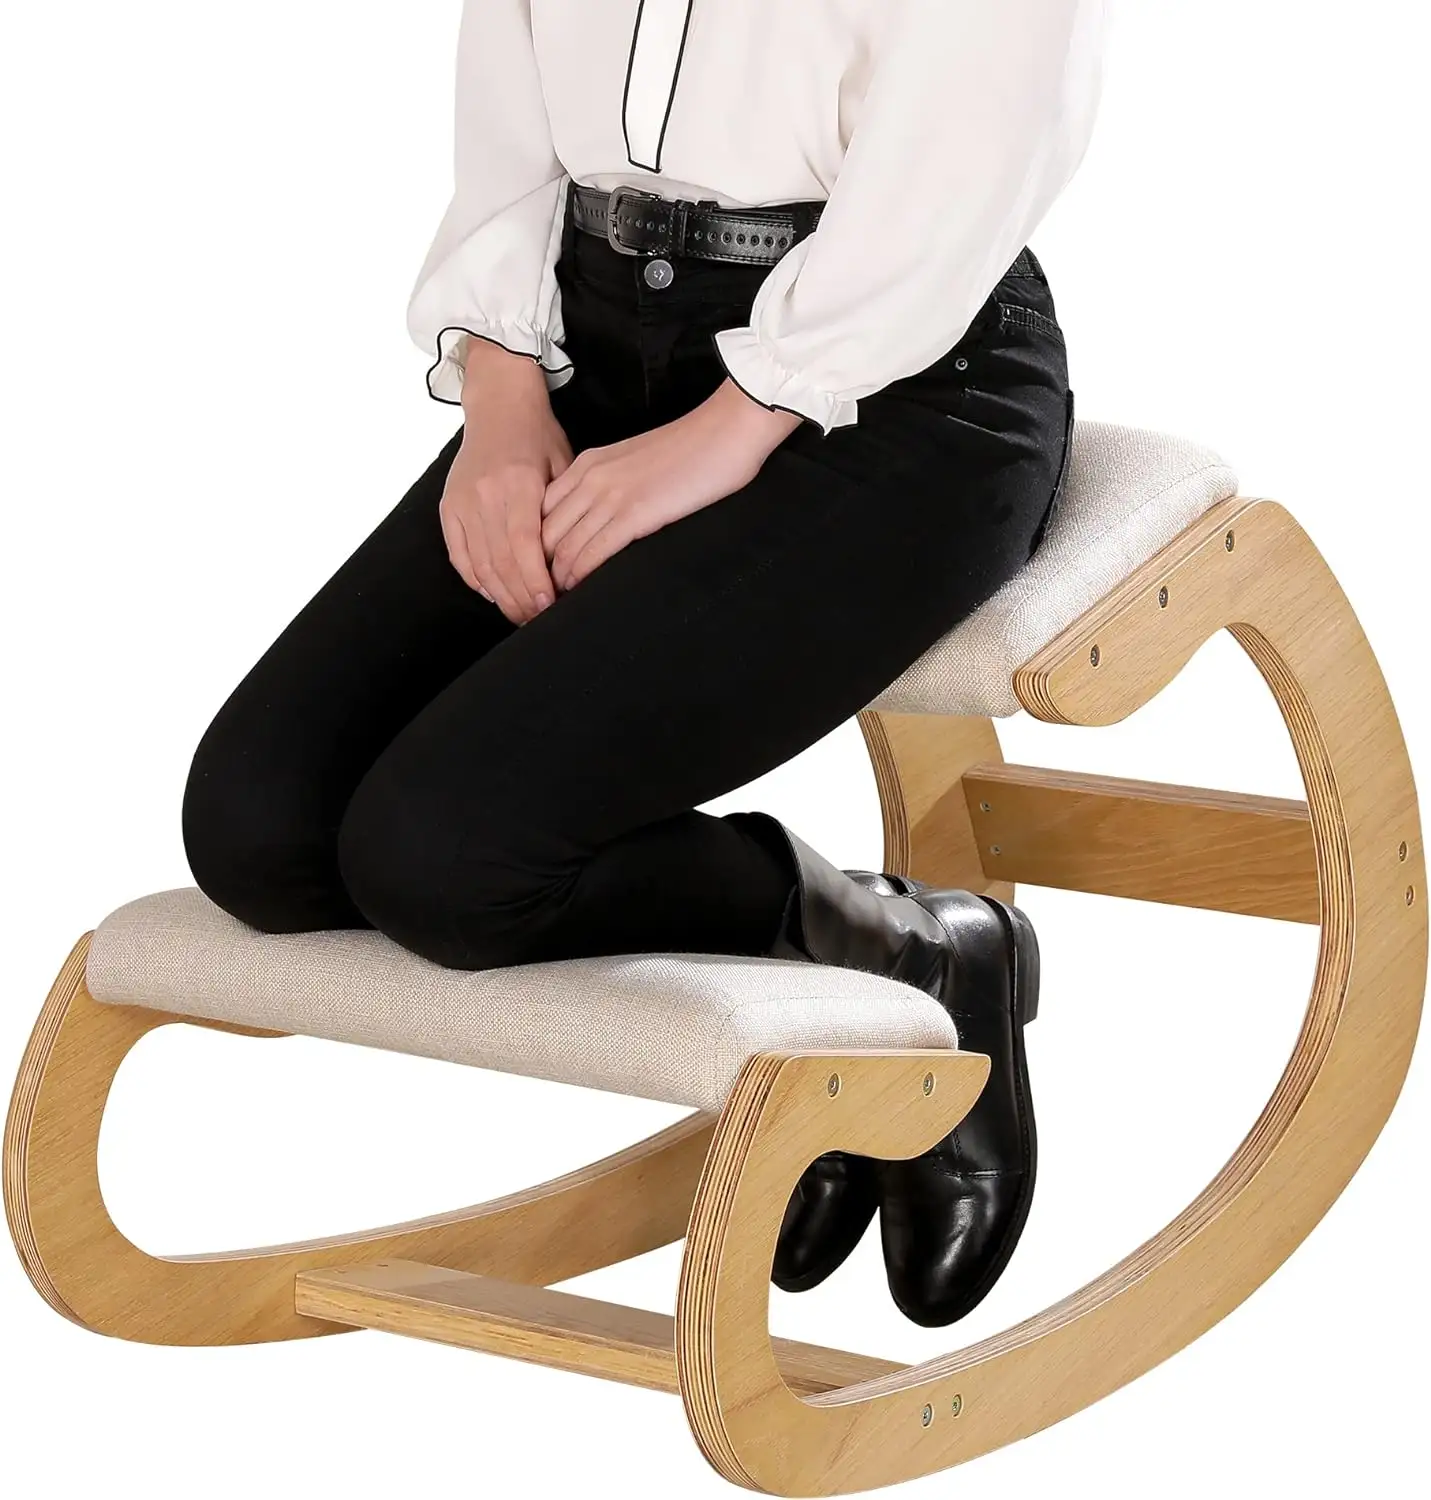 Chaises berçantes en bois tabouret pour genou chaise à genoux ergonomique pour posture verticale avec coussin